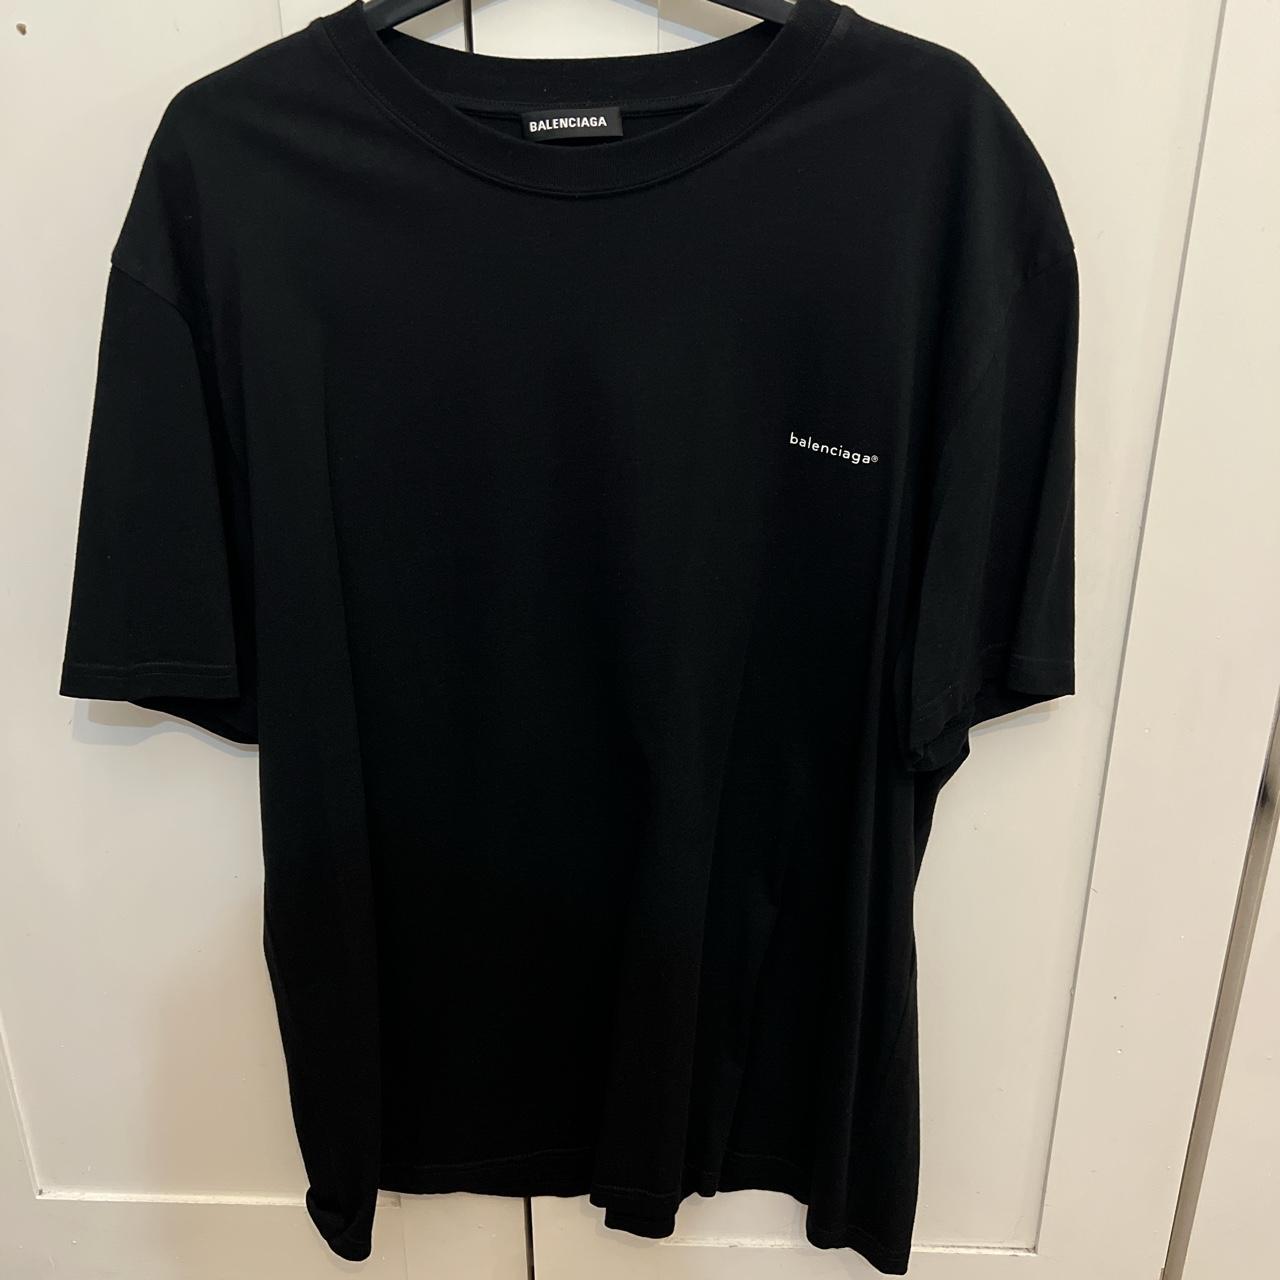 Balenciaga Men's Black T-shirt | Depop